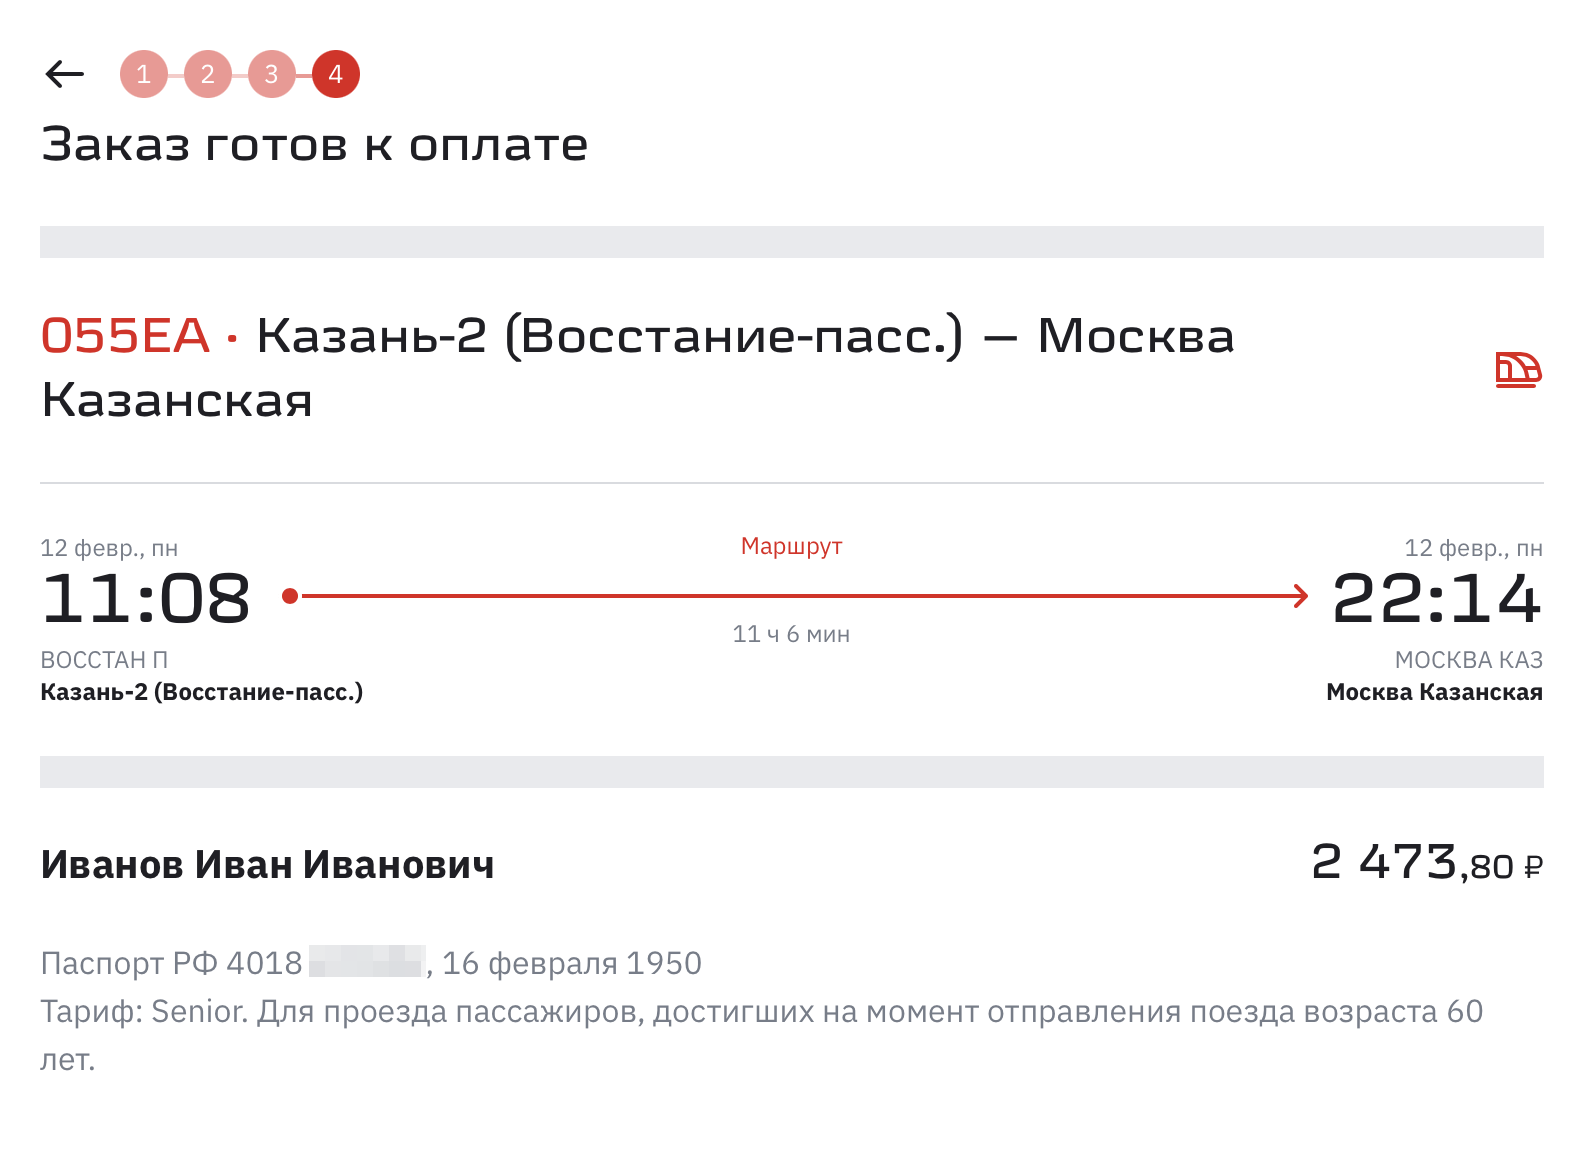 Со скидкой для людей пожилого возраста билет в купе Казань — Москва стоит 2473 ₽. Без скидки — 2870 ₽